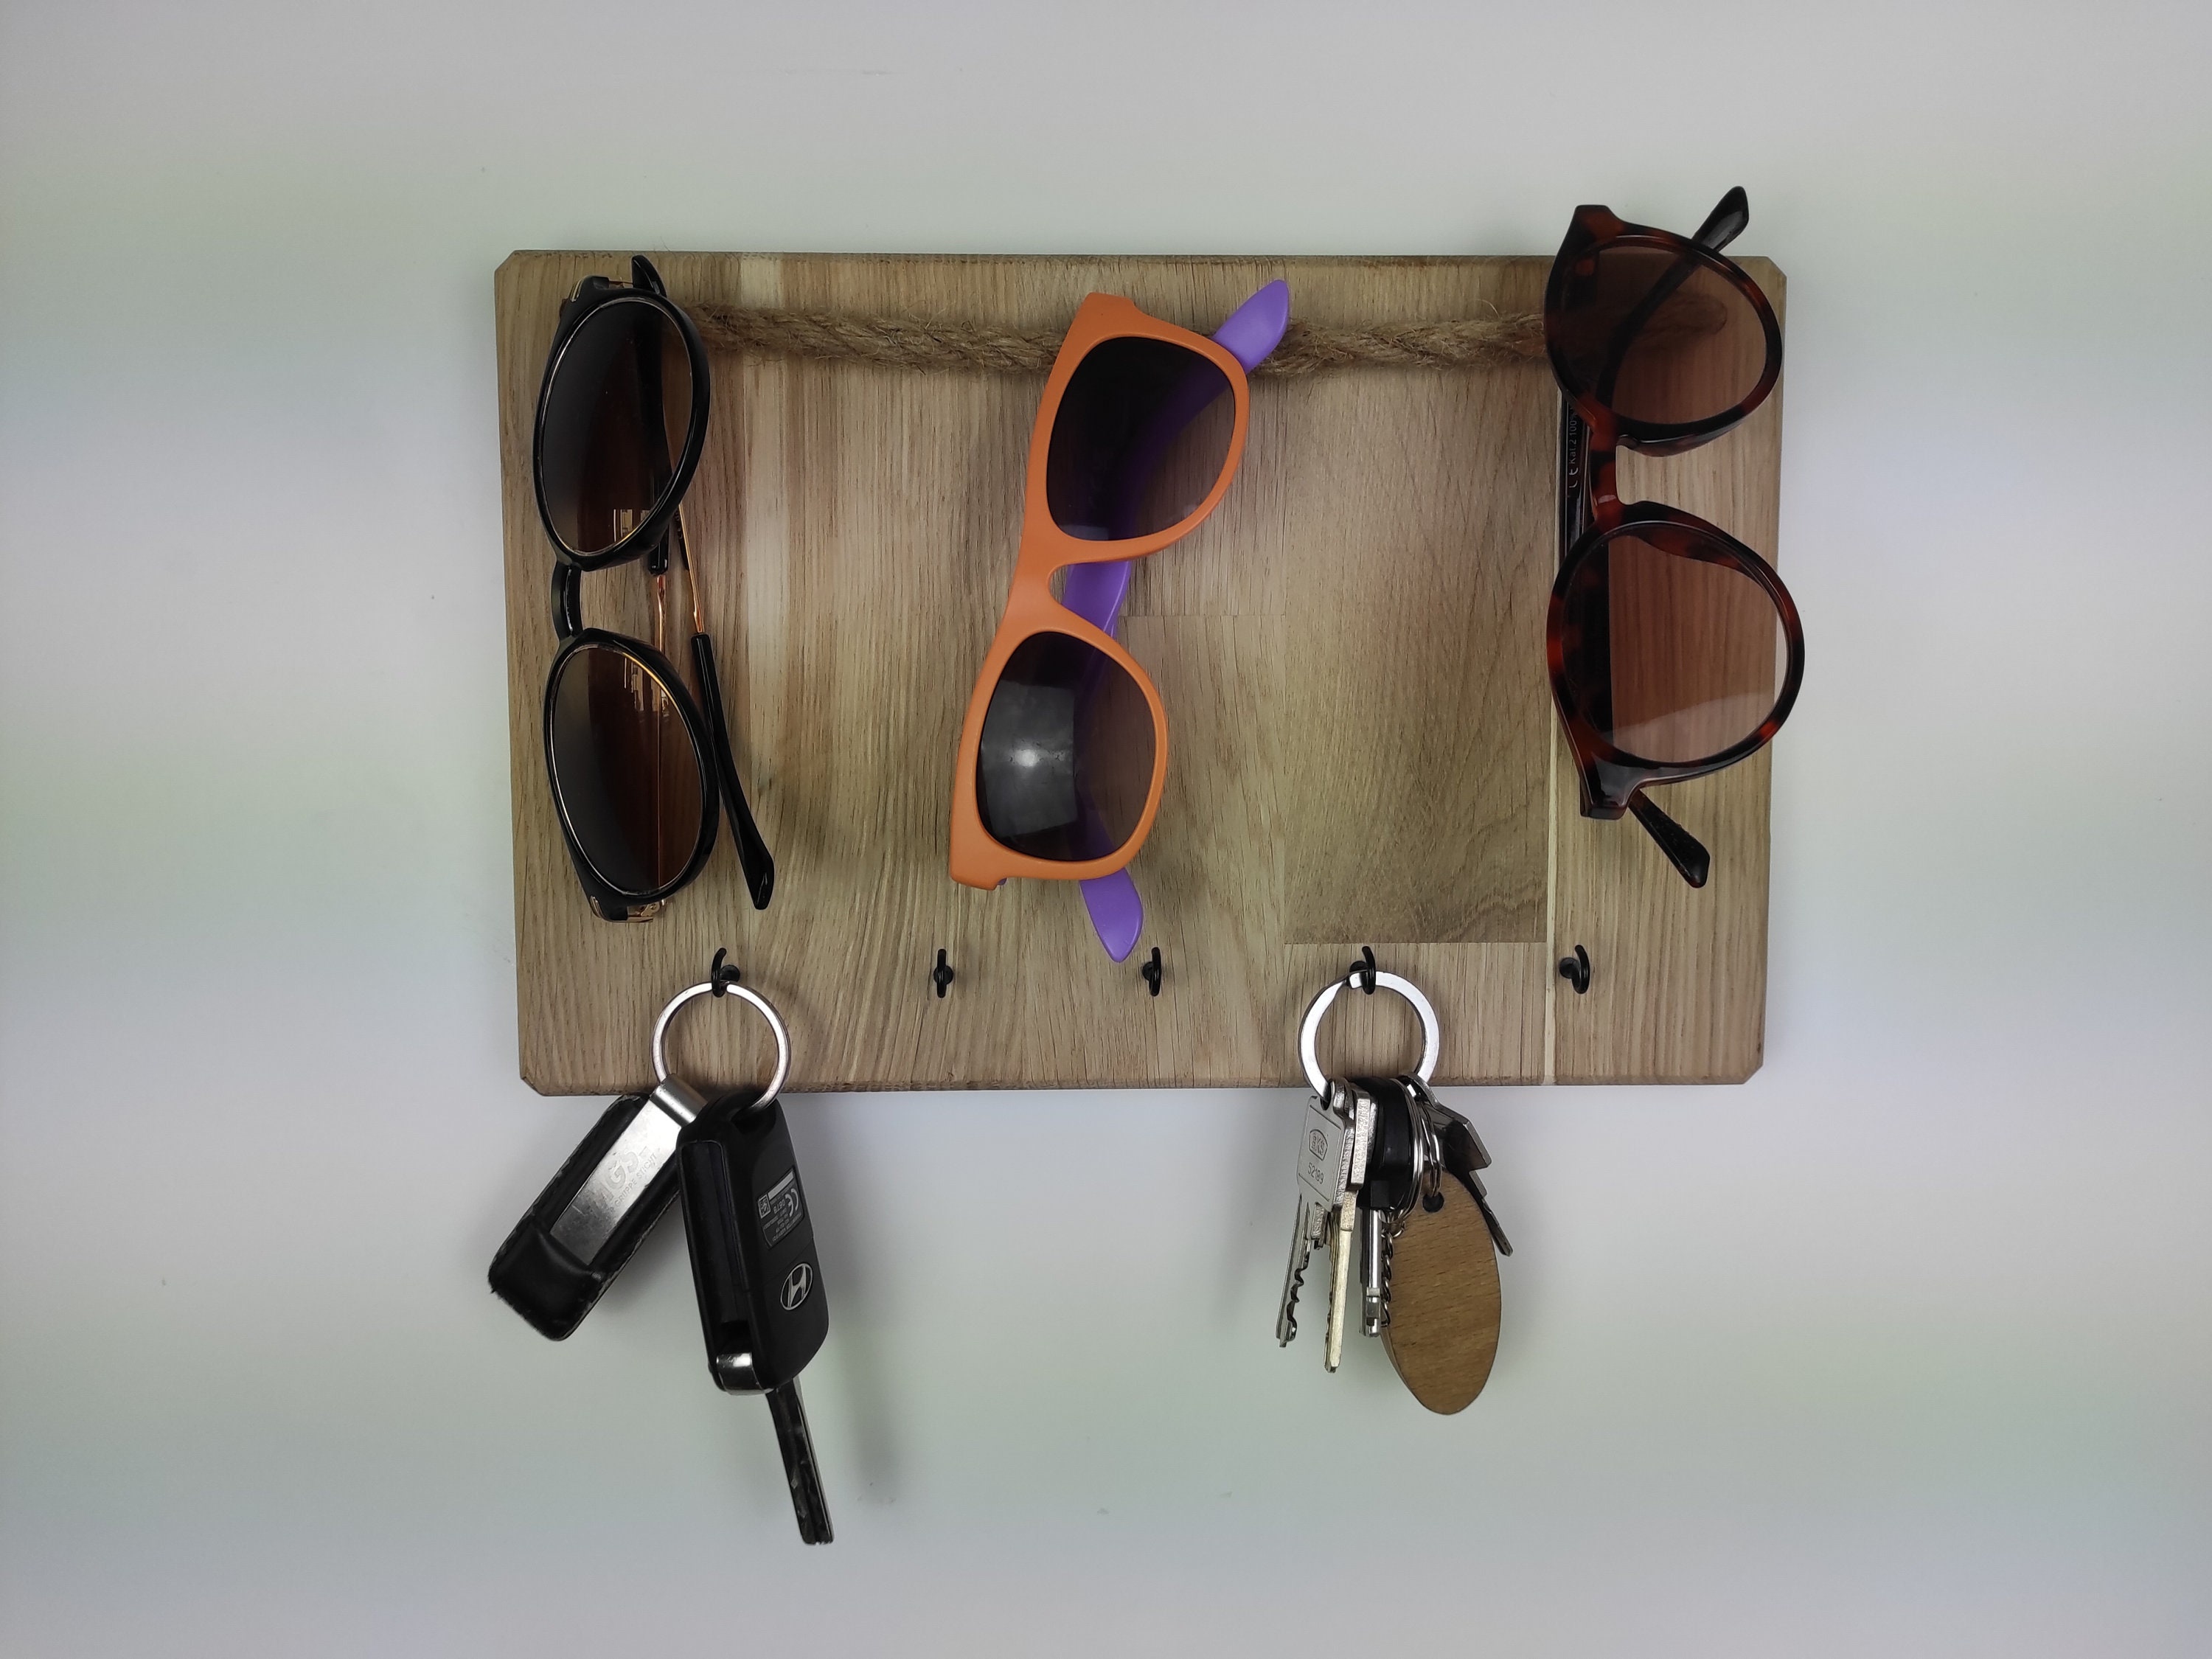 FINDAMAZE Brillenaufbewahrung 2 Stück, kurzer Sonnenbrillen Organizer  Wandmontage, Brillenständer/Brillenhalter zum Aufhängen der Brille,  Brillen-Display, Blau : : Küche, Haushalt & Wohnen